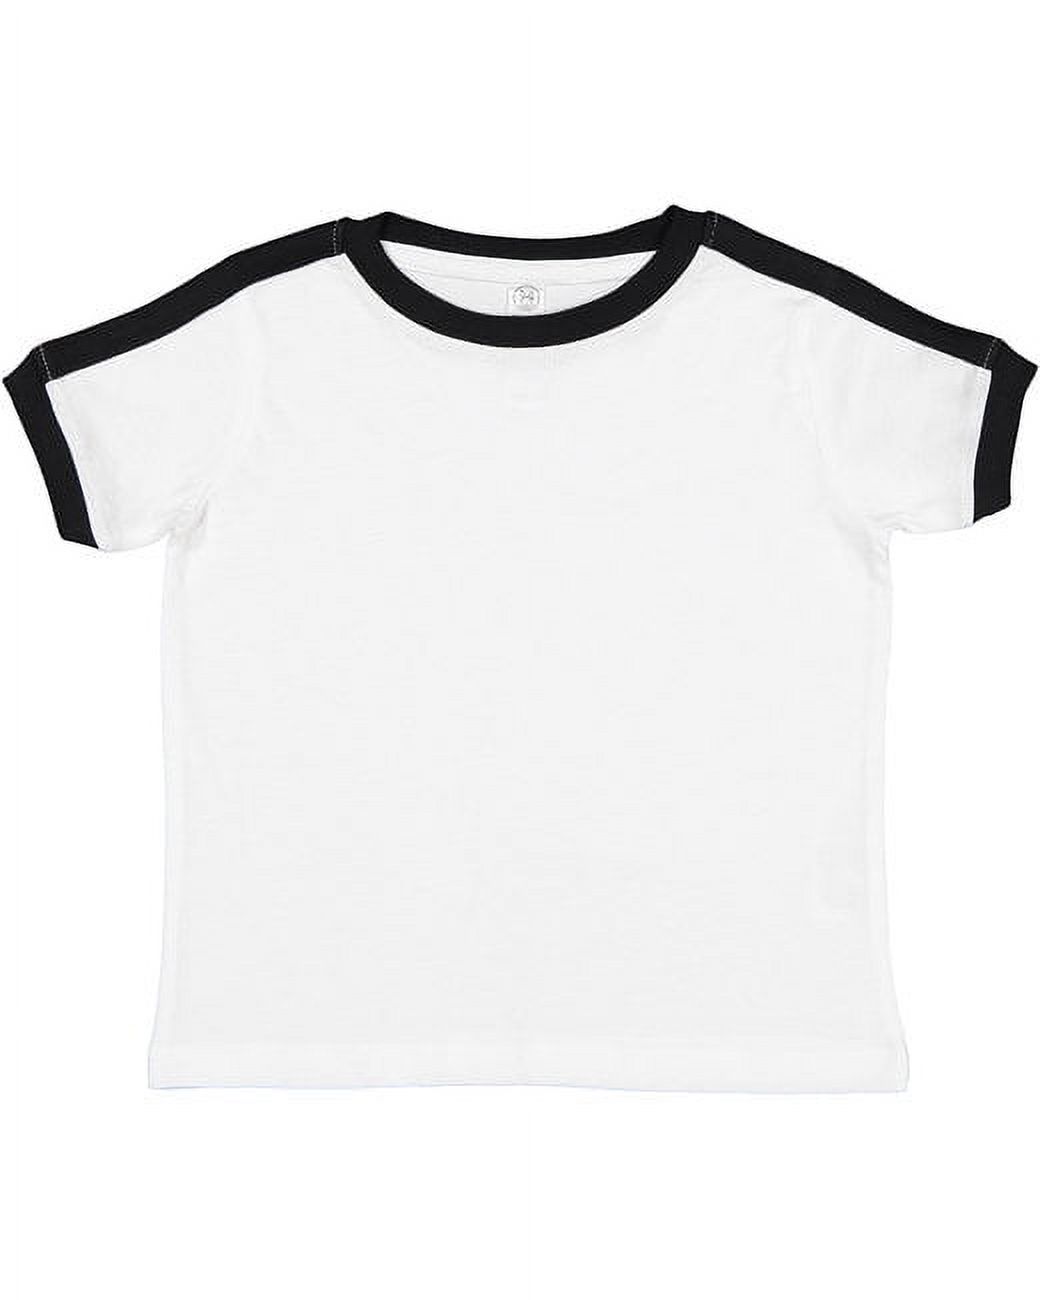 Toddler Retro Ringer T-Shirt - WHITE/BLACK - 3T - image 1 of 2